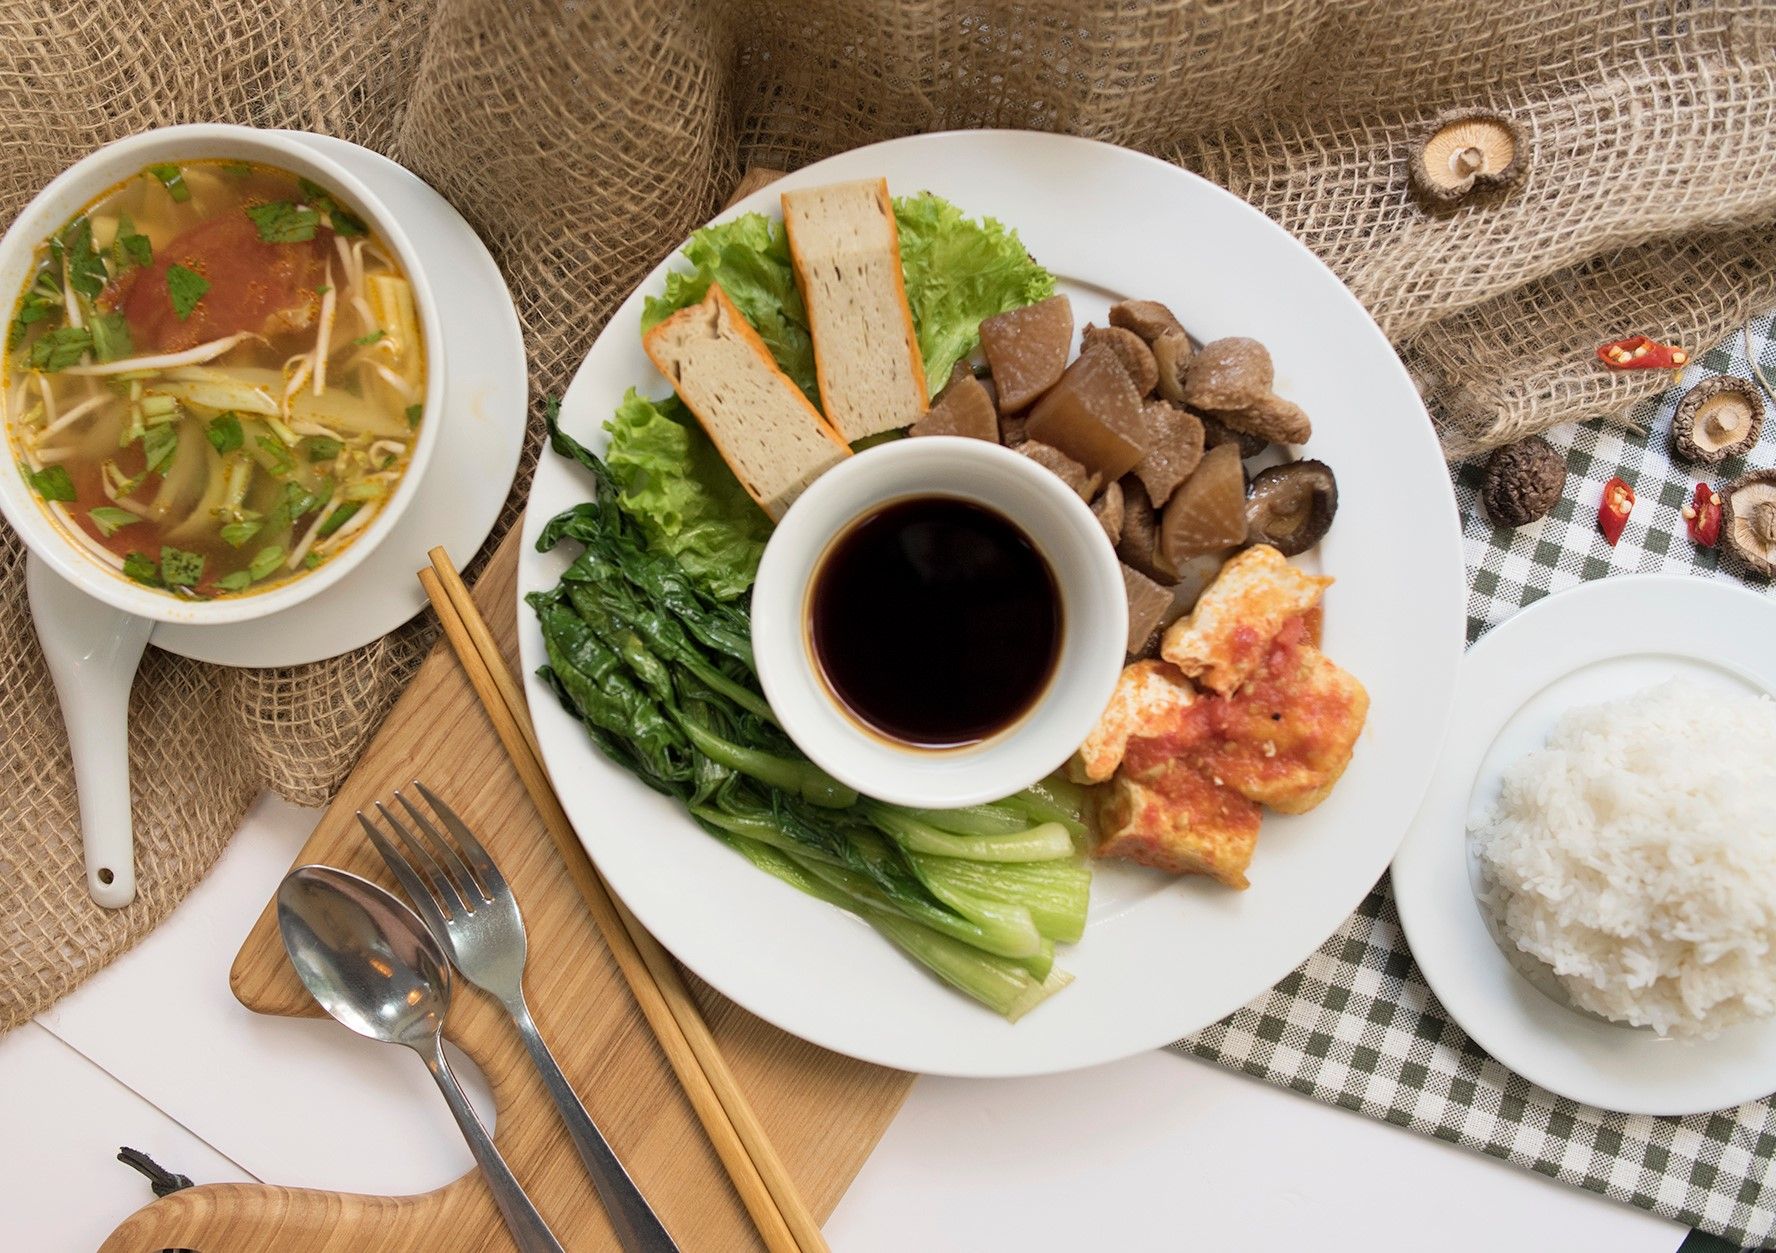 Những món ăn thanh đạm và bổ dưỡng ở cơm chay Nàng Tấm - quán ăn chay bình dân Hà Nội vô cùng được yêu thích